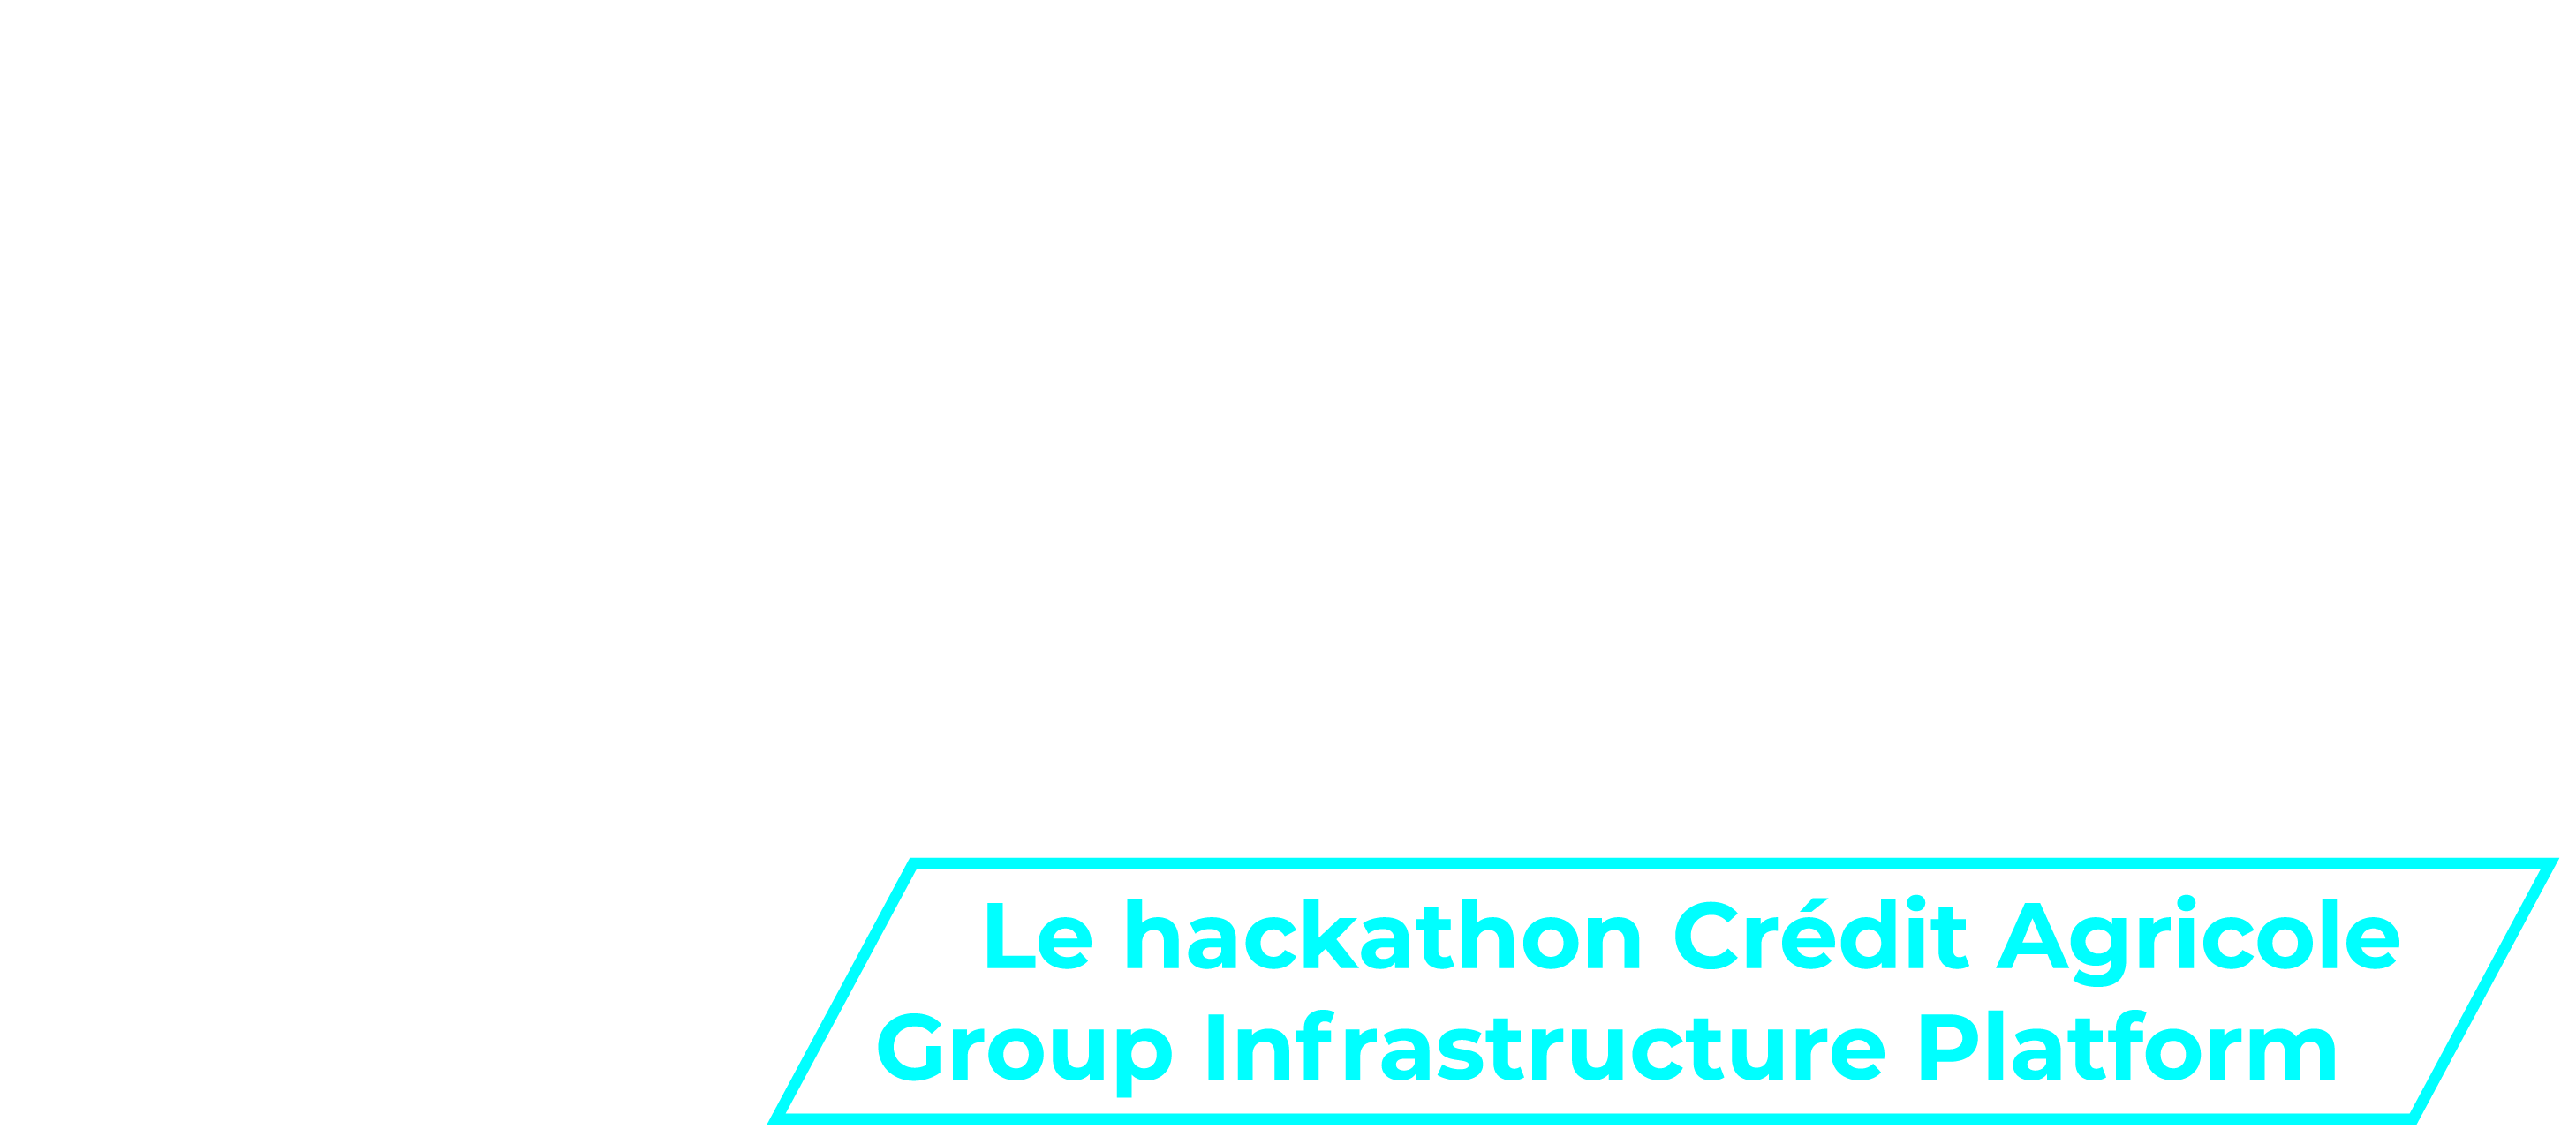 DevOps Heroes by Crédit Agricole Group Infrastructure Platform